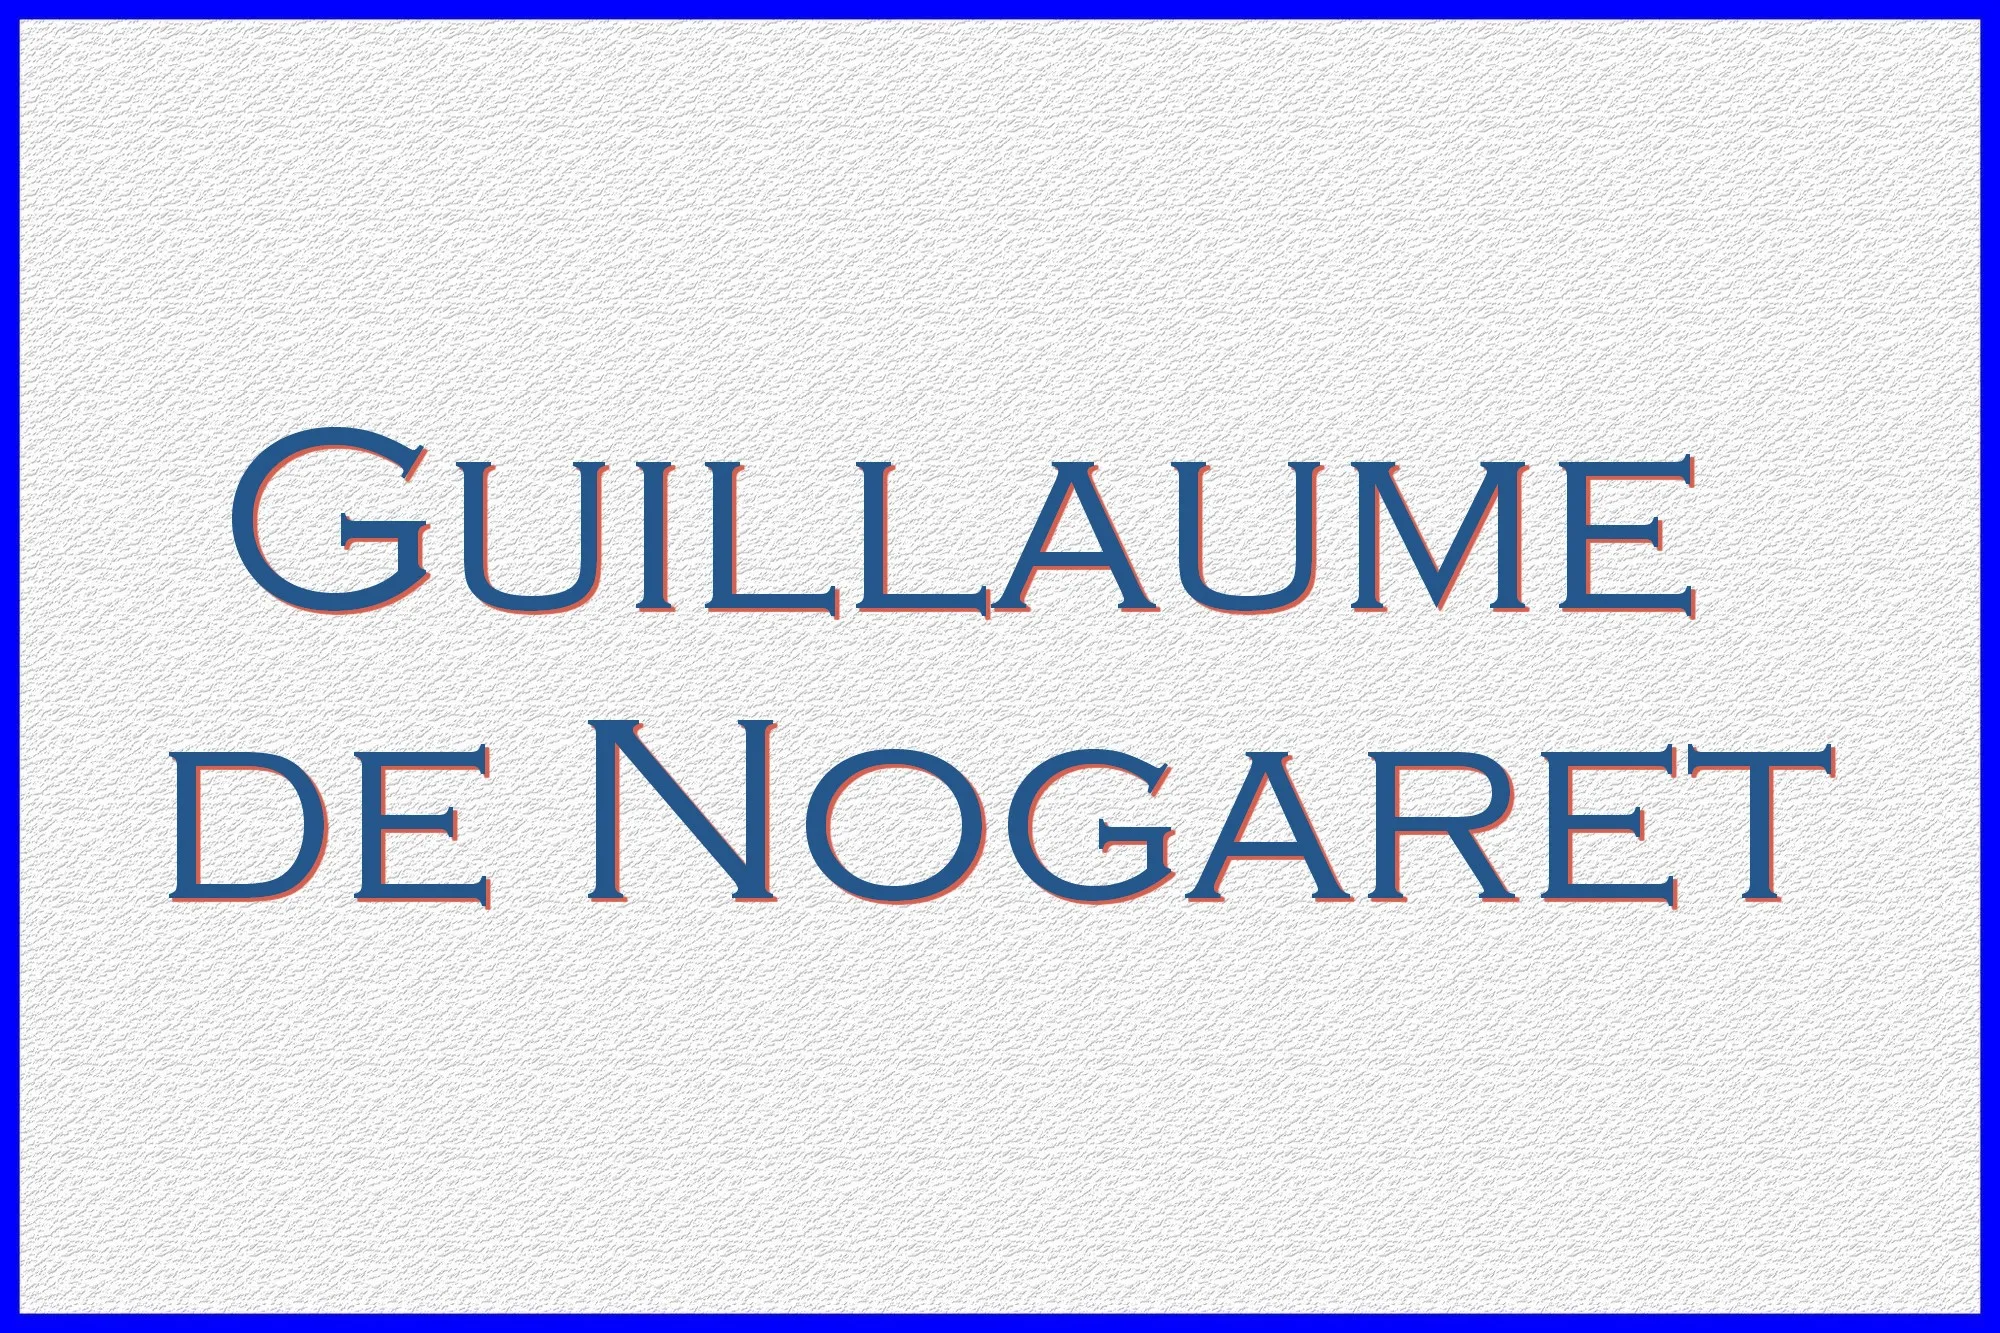 Guillaume de Nogaret